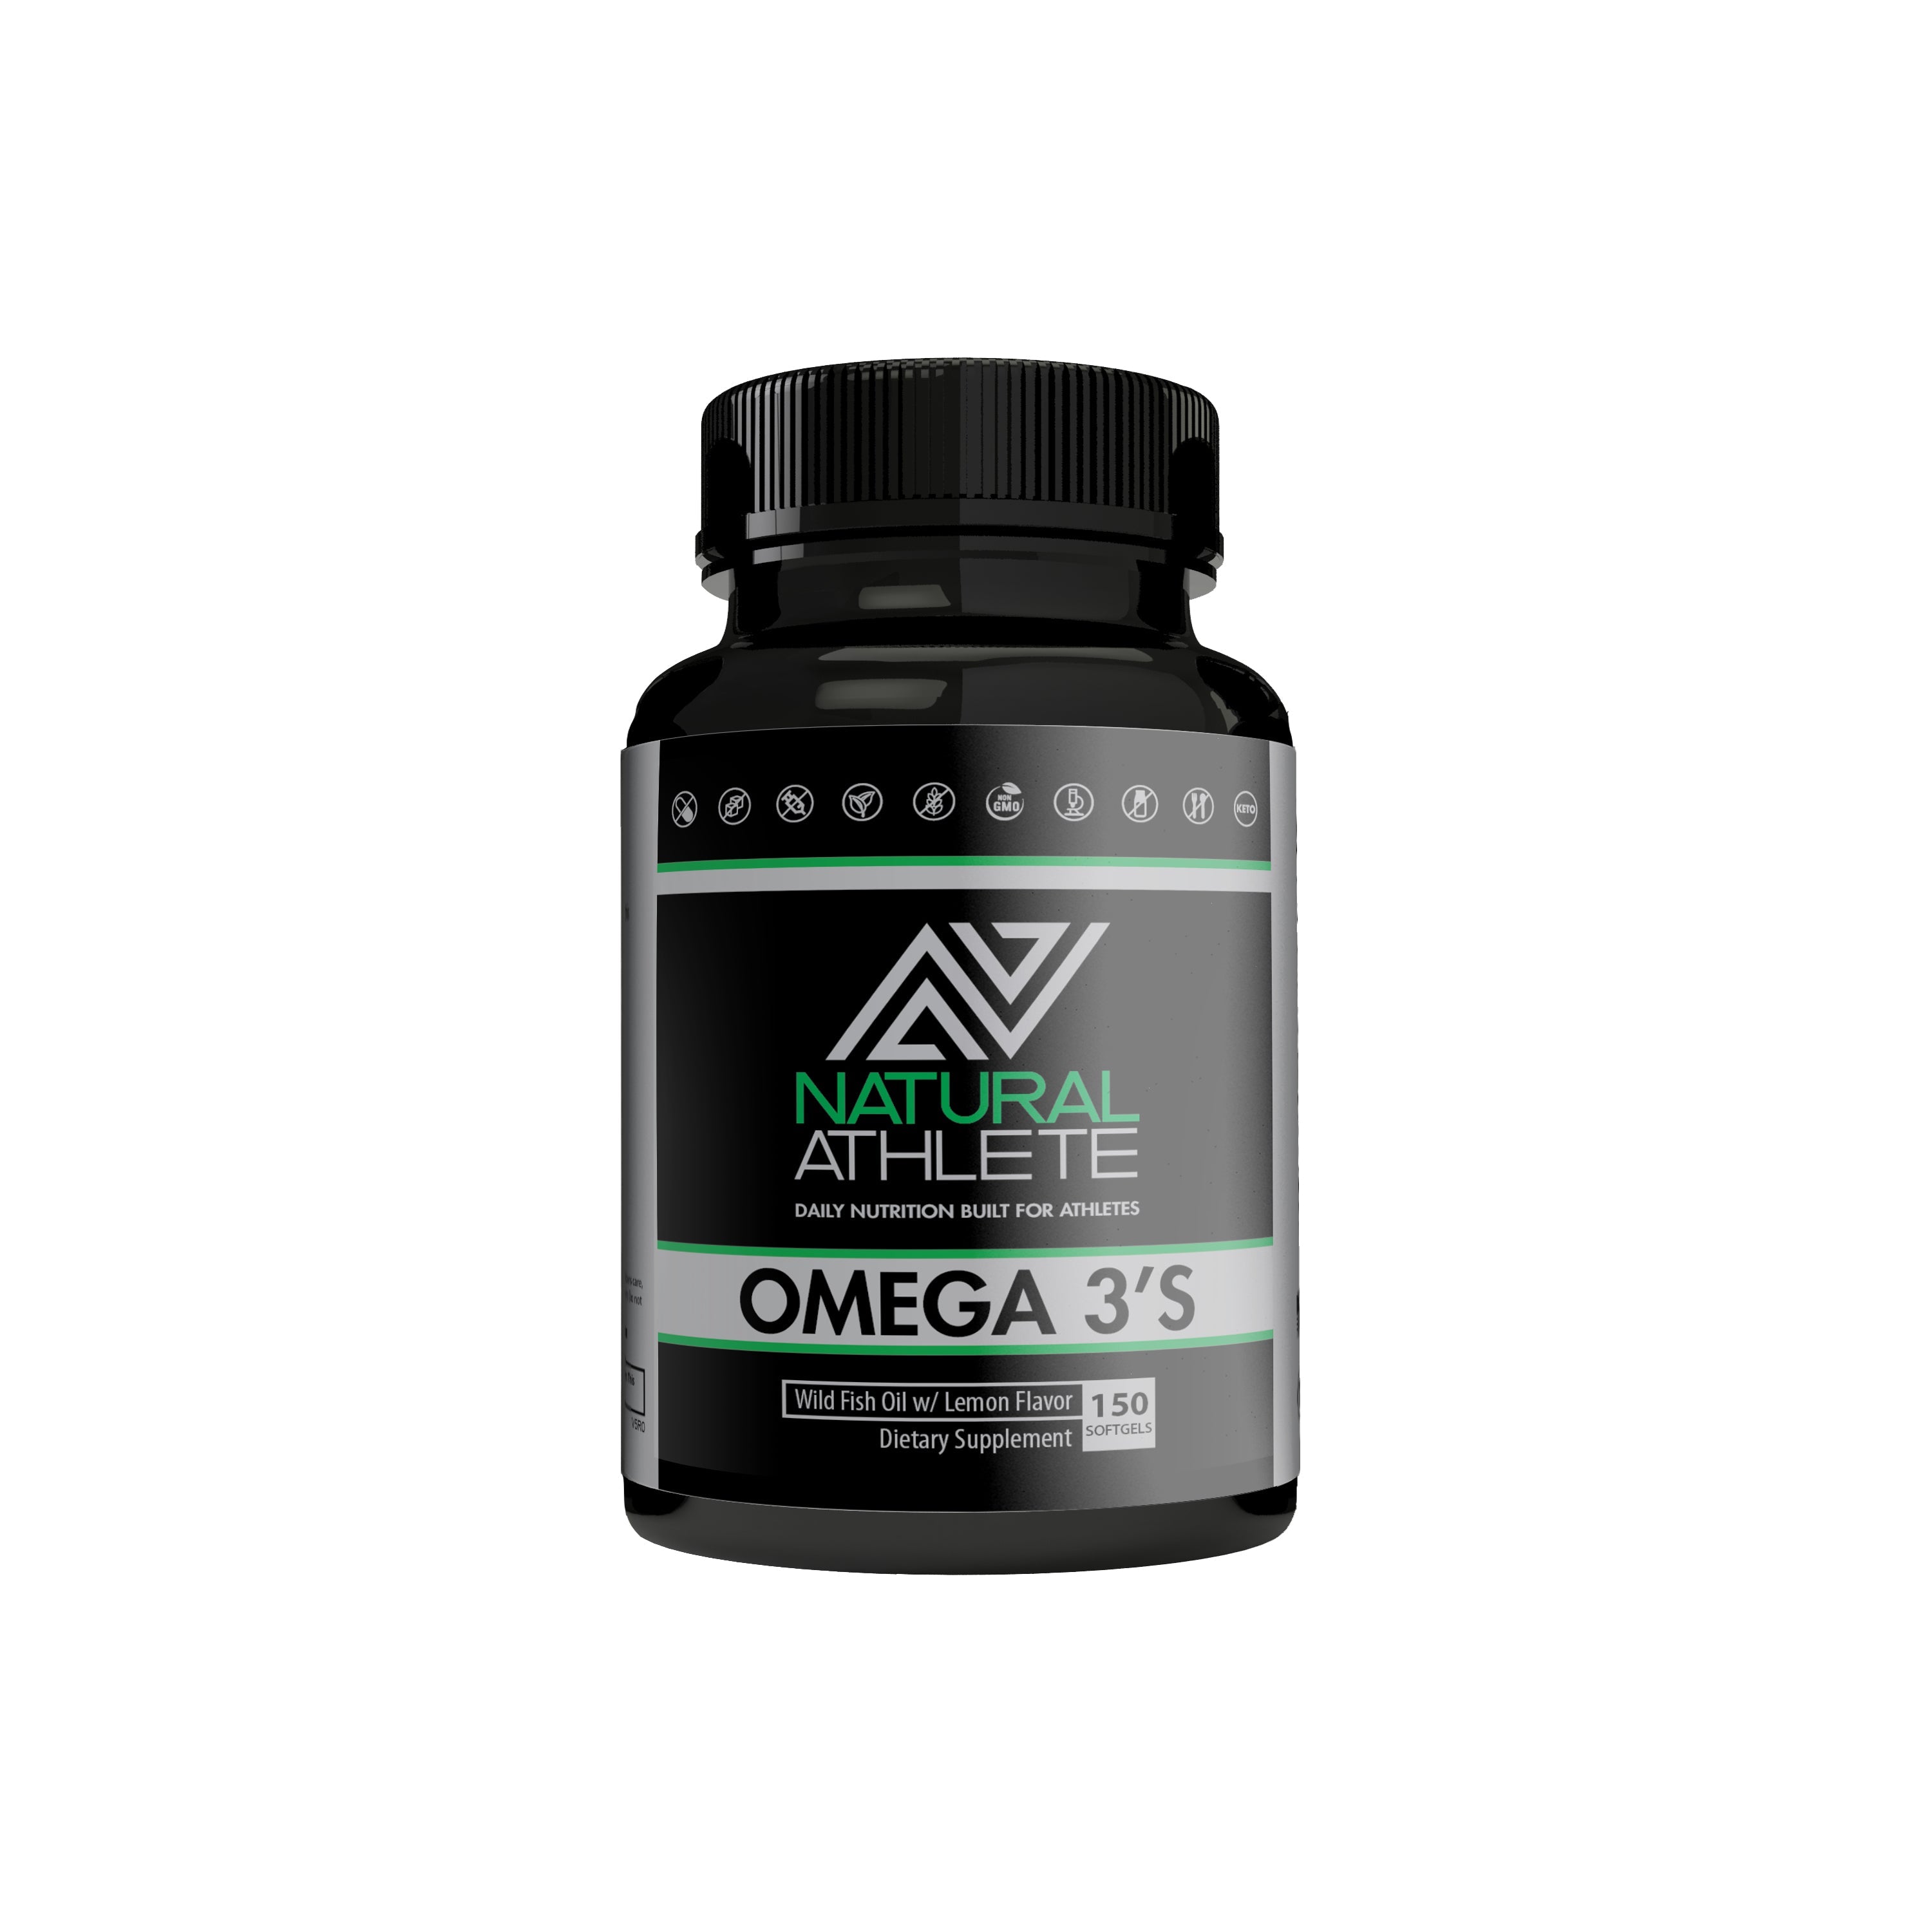 Omega 3's